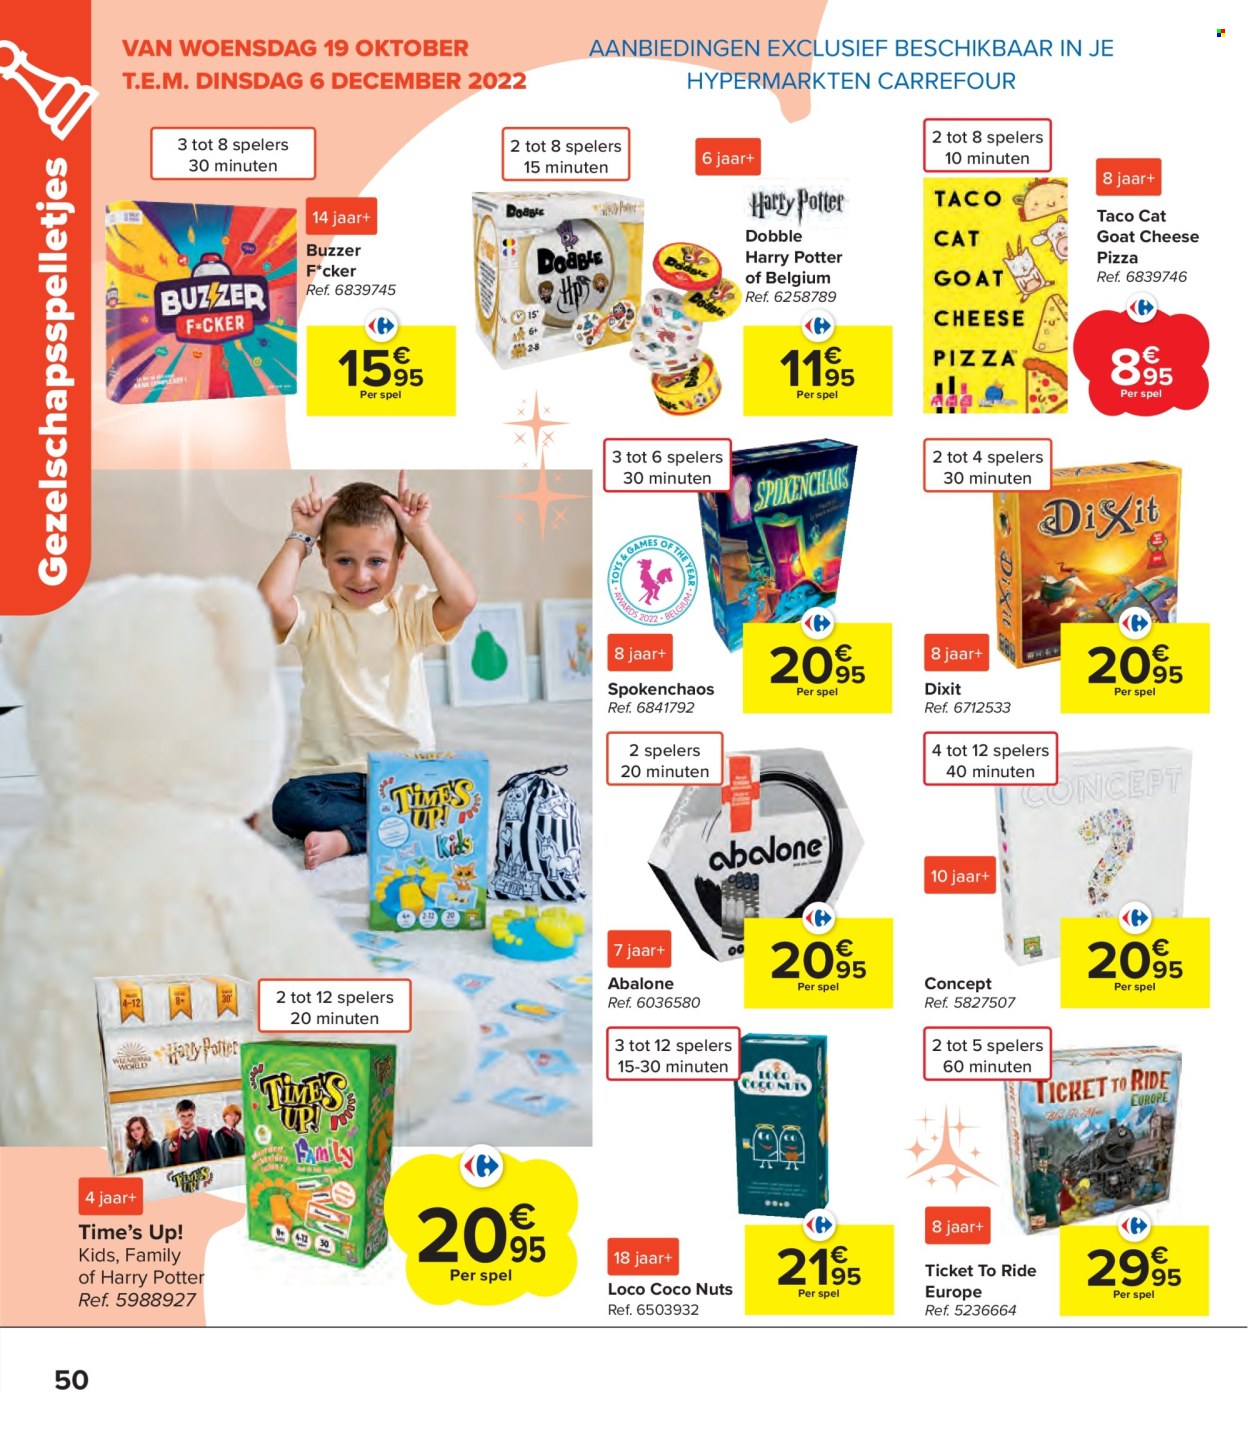 thumbnail - Catalogue Carrefour hypermarkt - 19/10/2022 - 06/12/2022 - Produits soldés - Harry Potter, Dobble, Time's Up, pizza. Page 50.